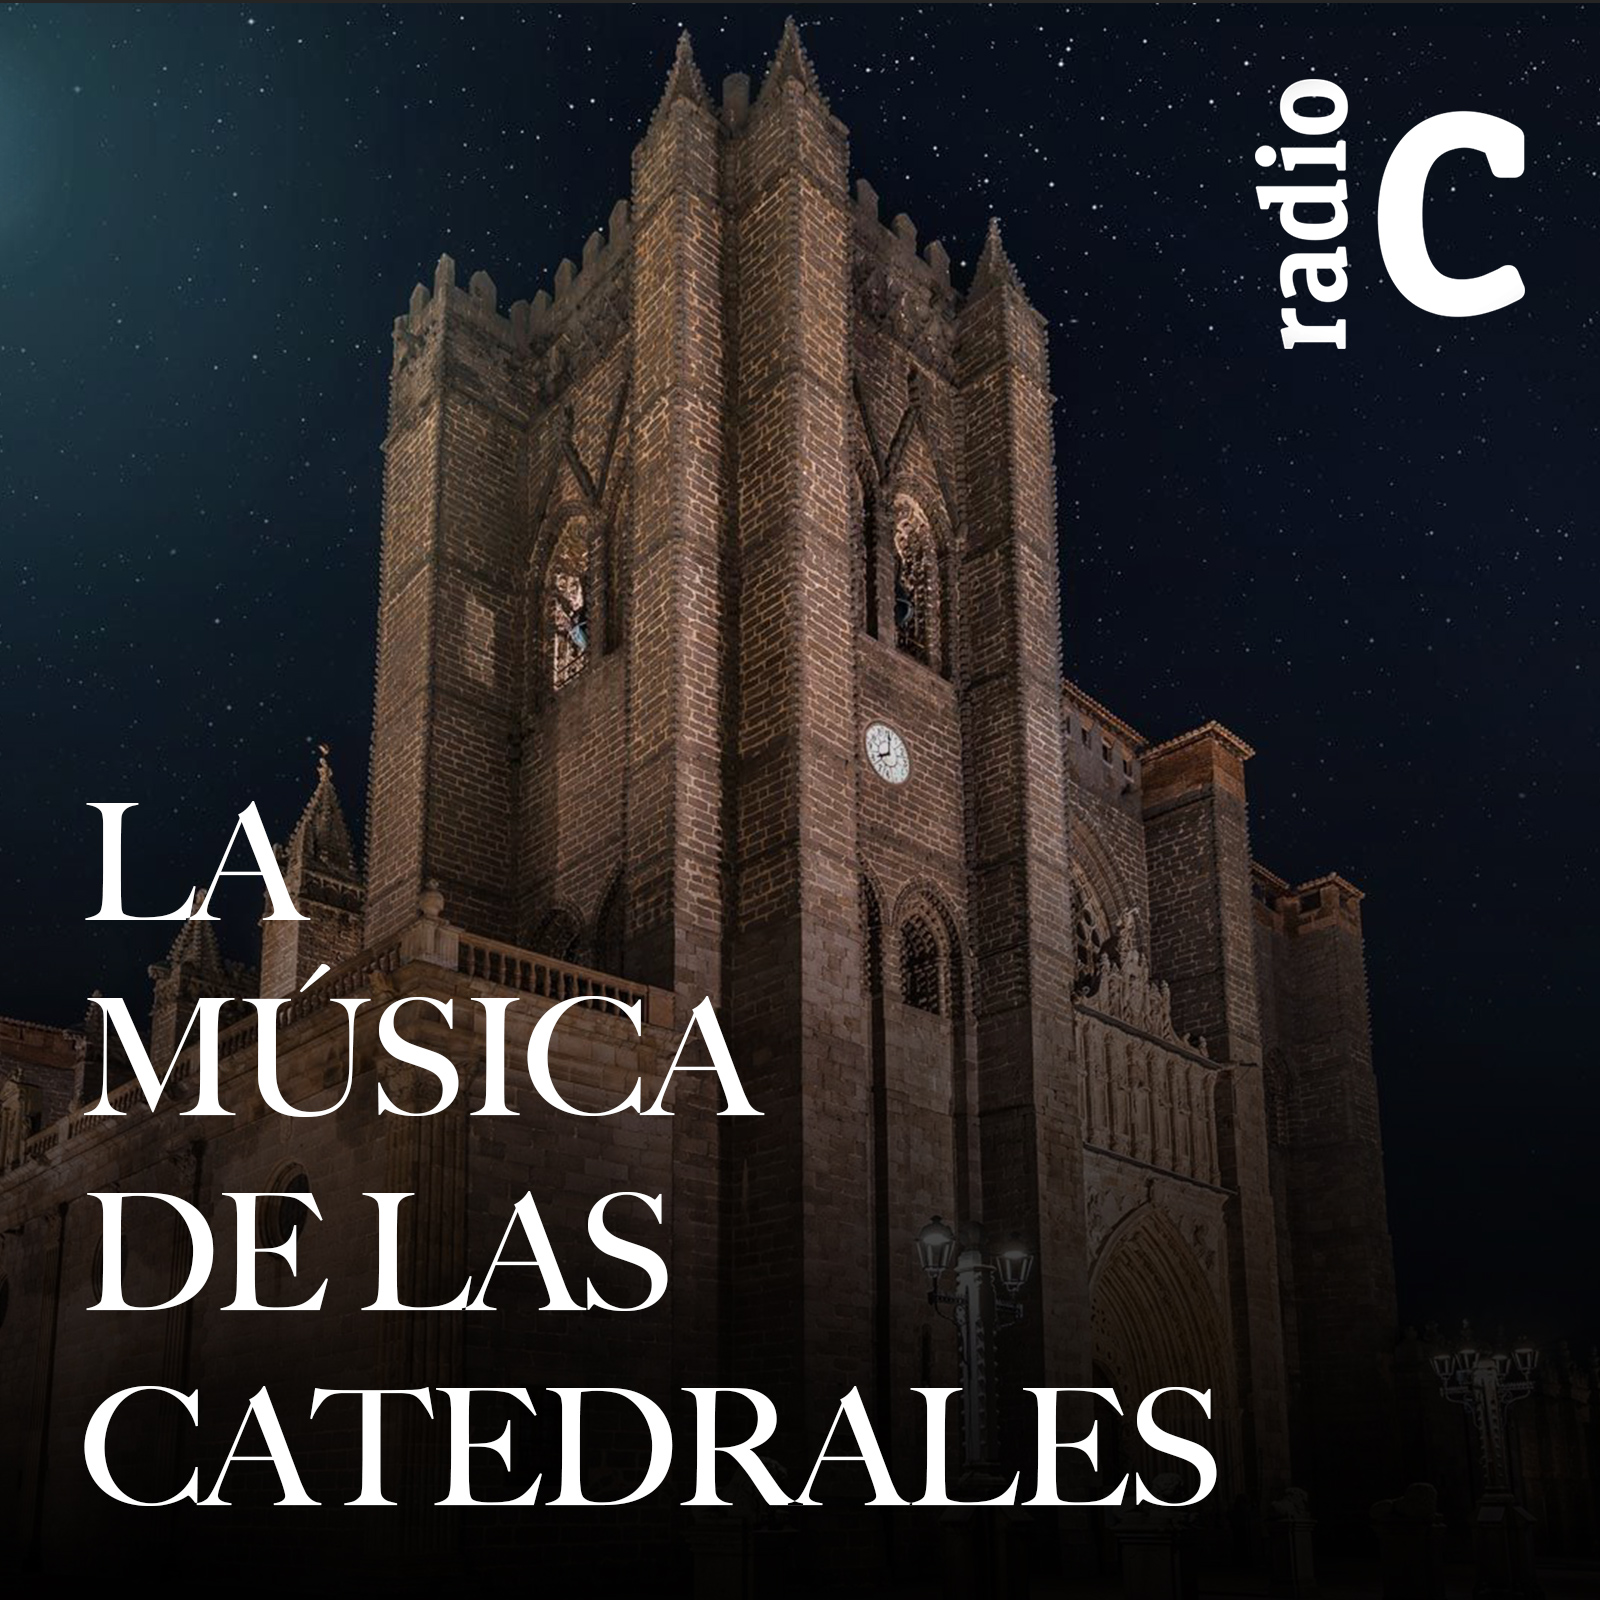 La música de las catedrales